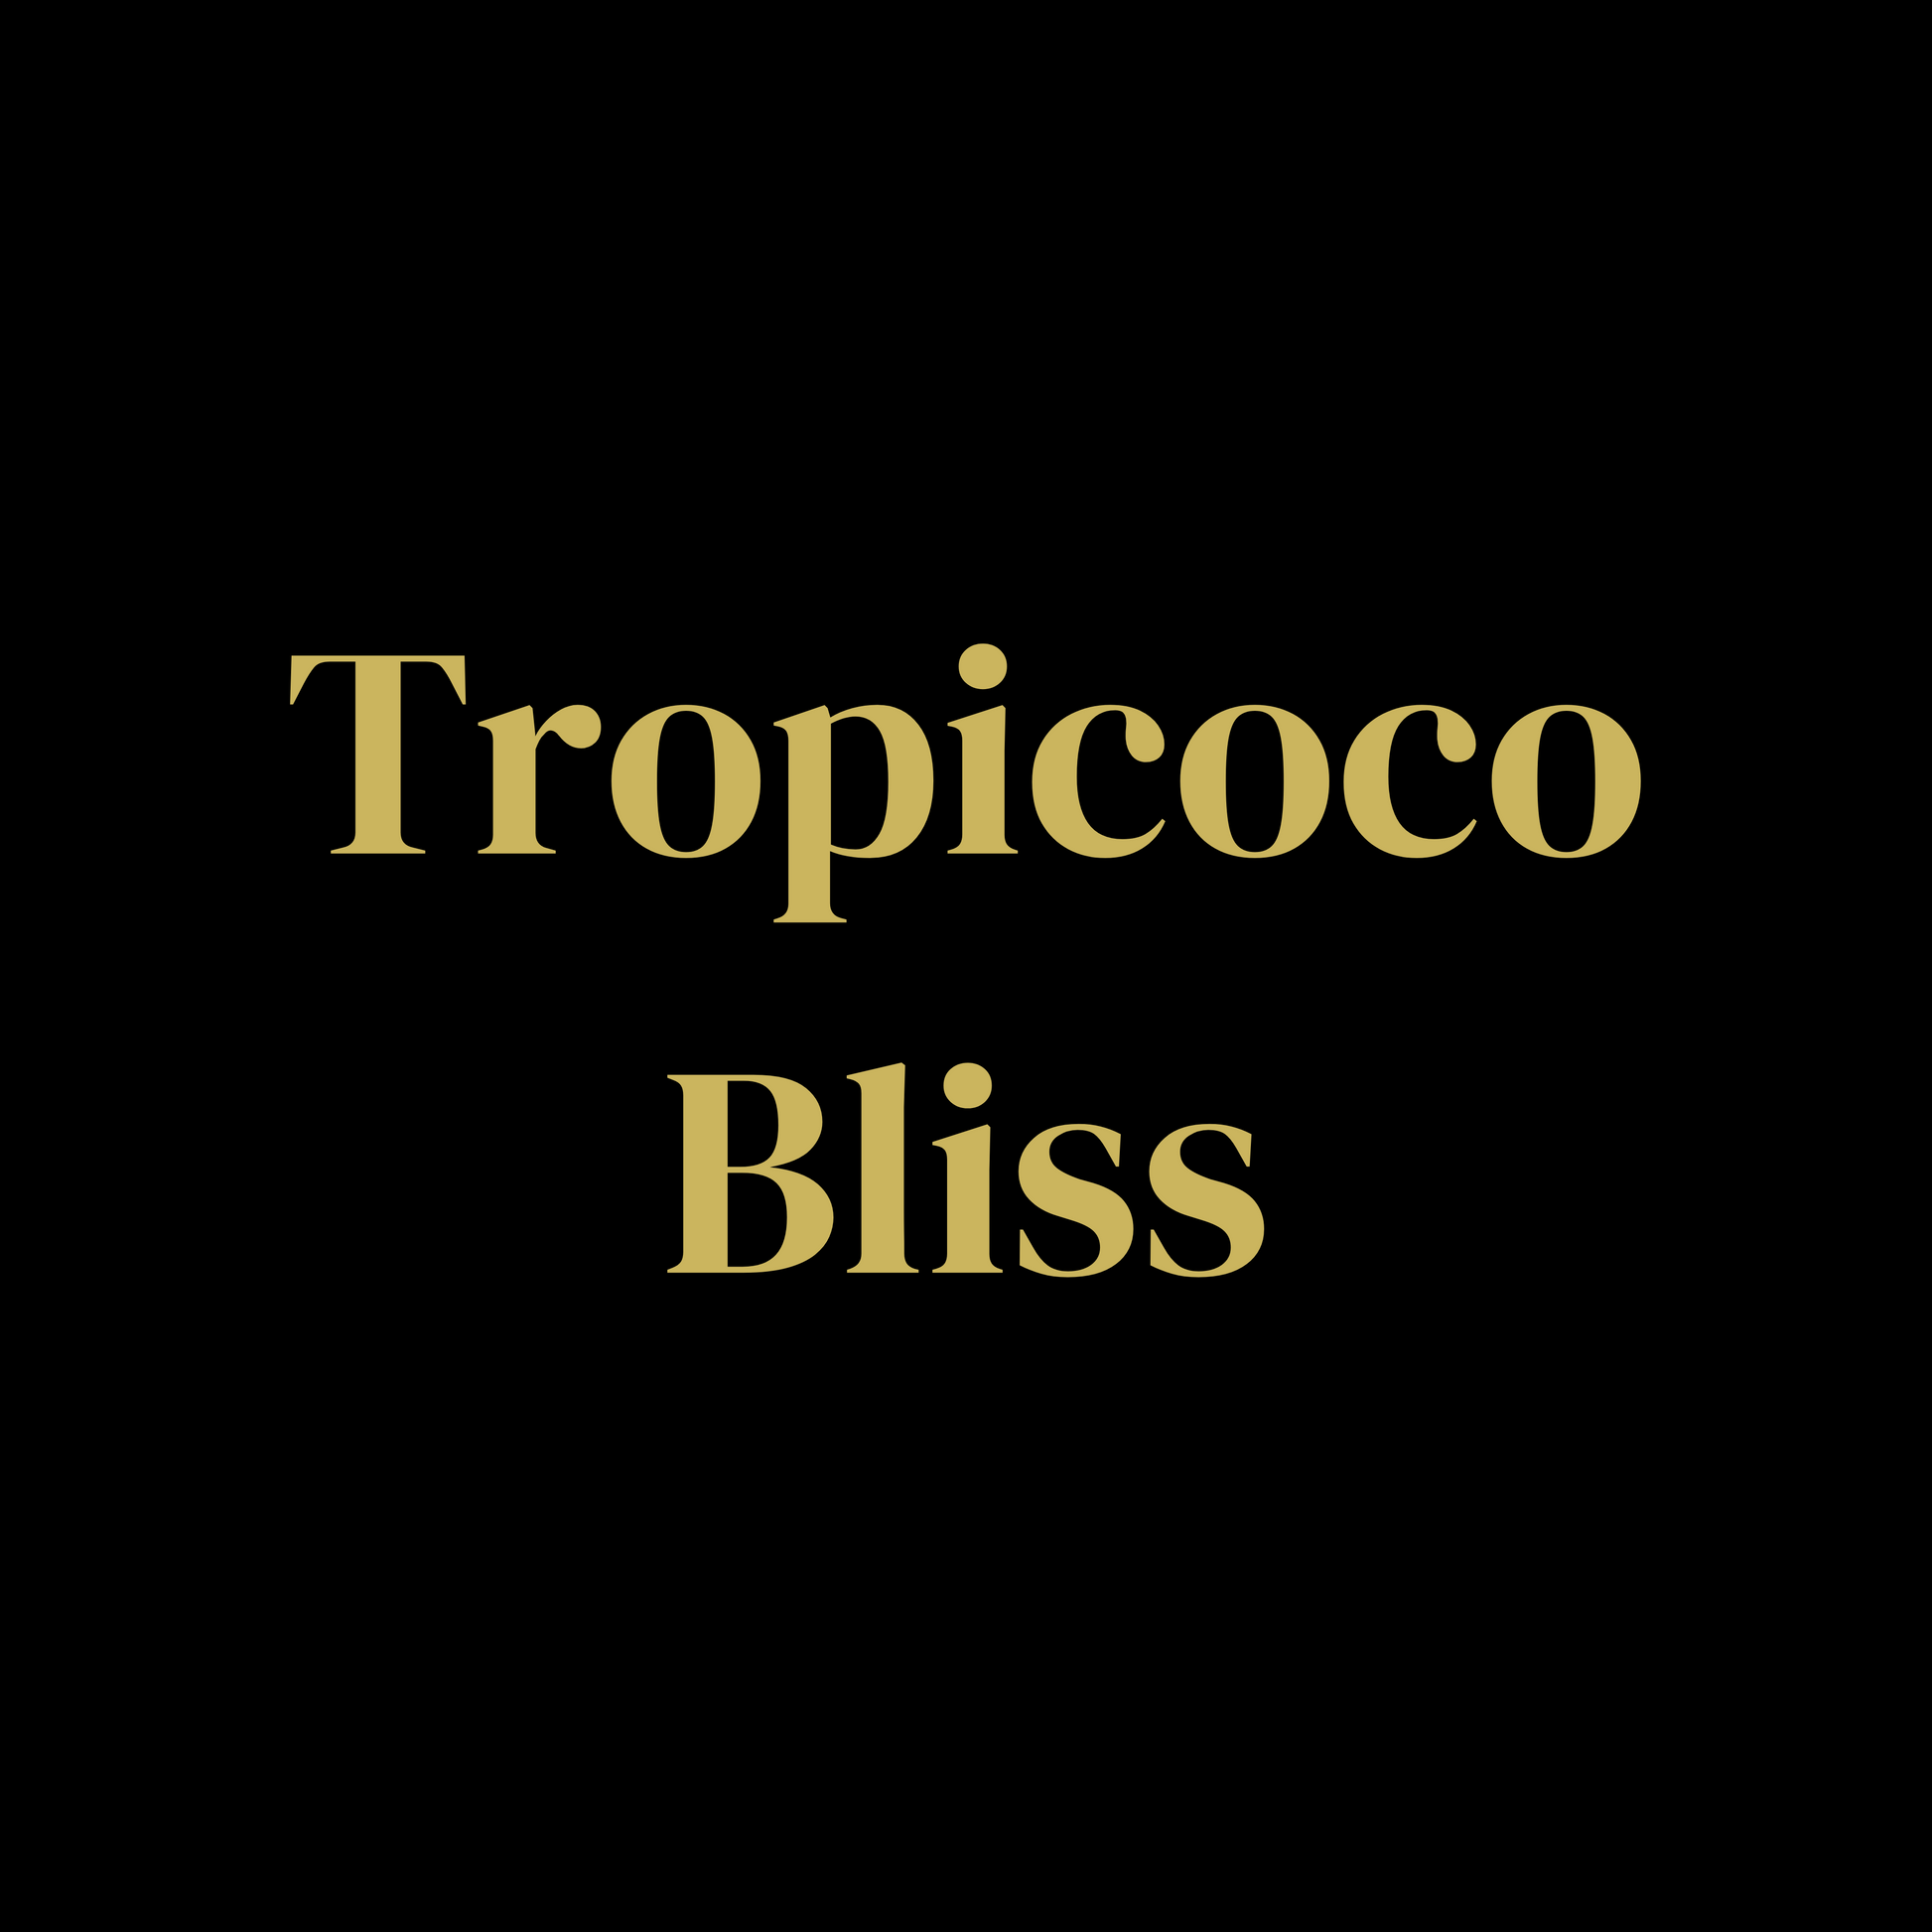 TROPICOCO BLISS - The Melt House